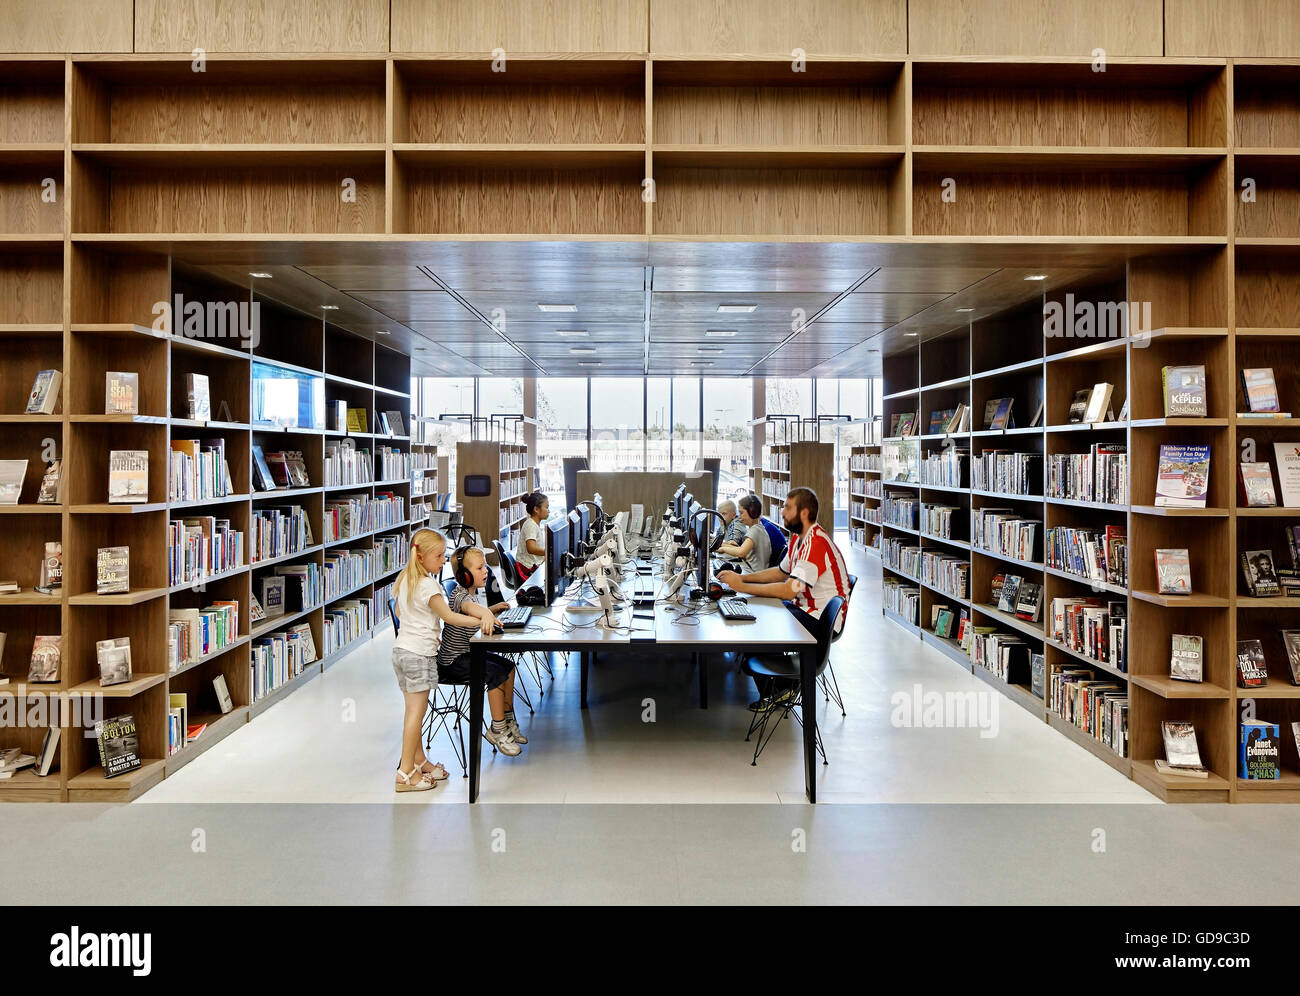 Bibliothek-Einrichtung mit Buch Gänge und es europäischen Forschungsraums. Hebburn Central, Hebburn, Vereinigtes Königreich. Architekt: Friedrich Braun, 2016. Stockfoto